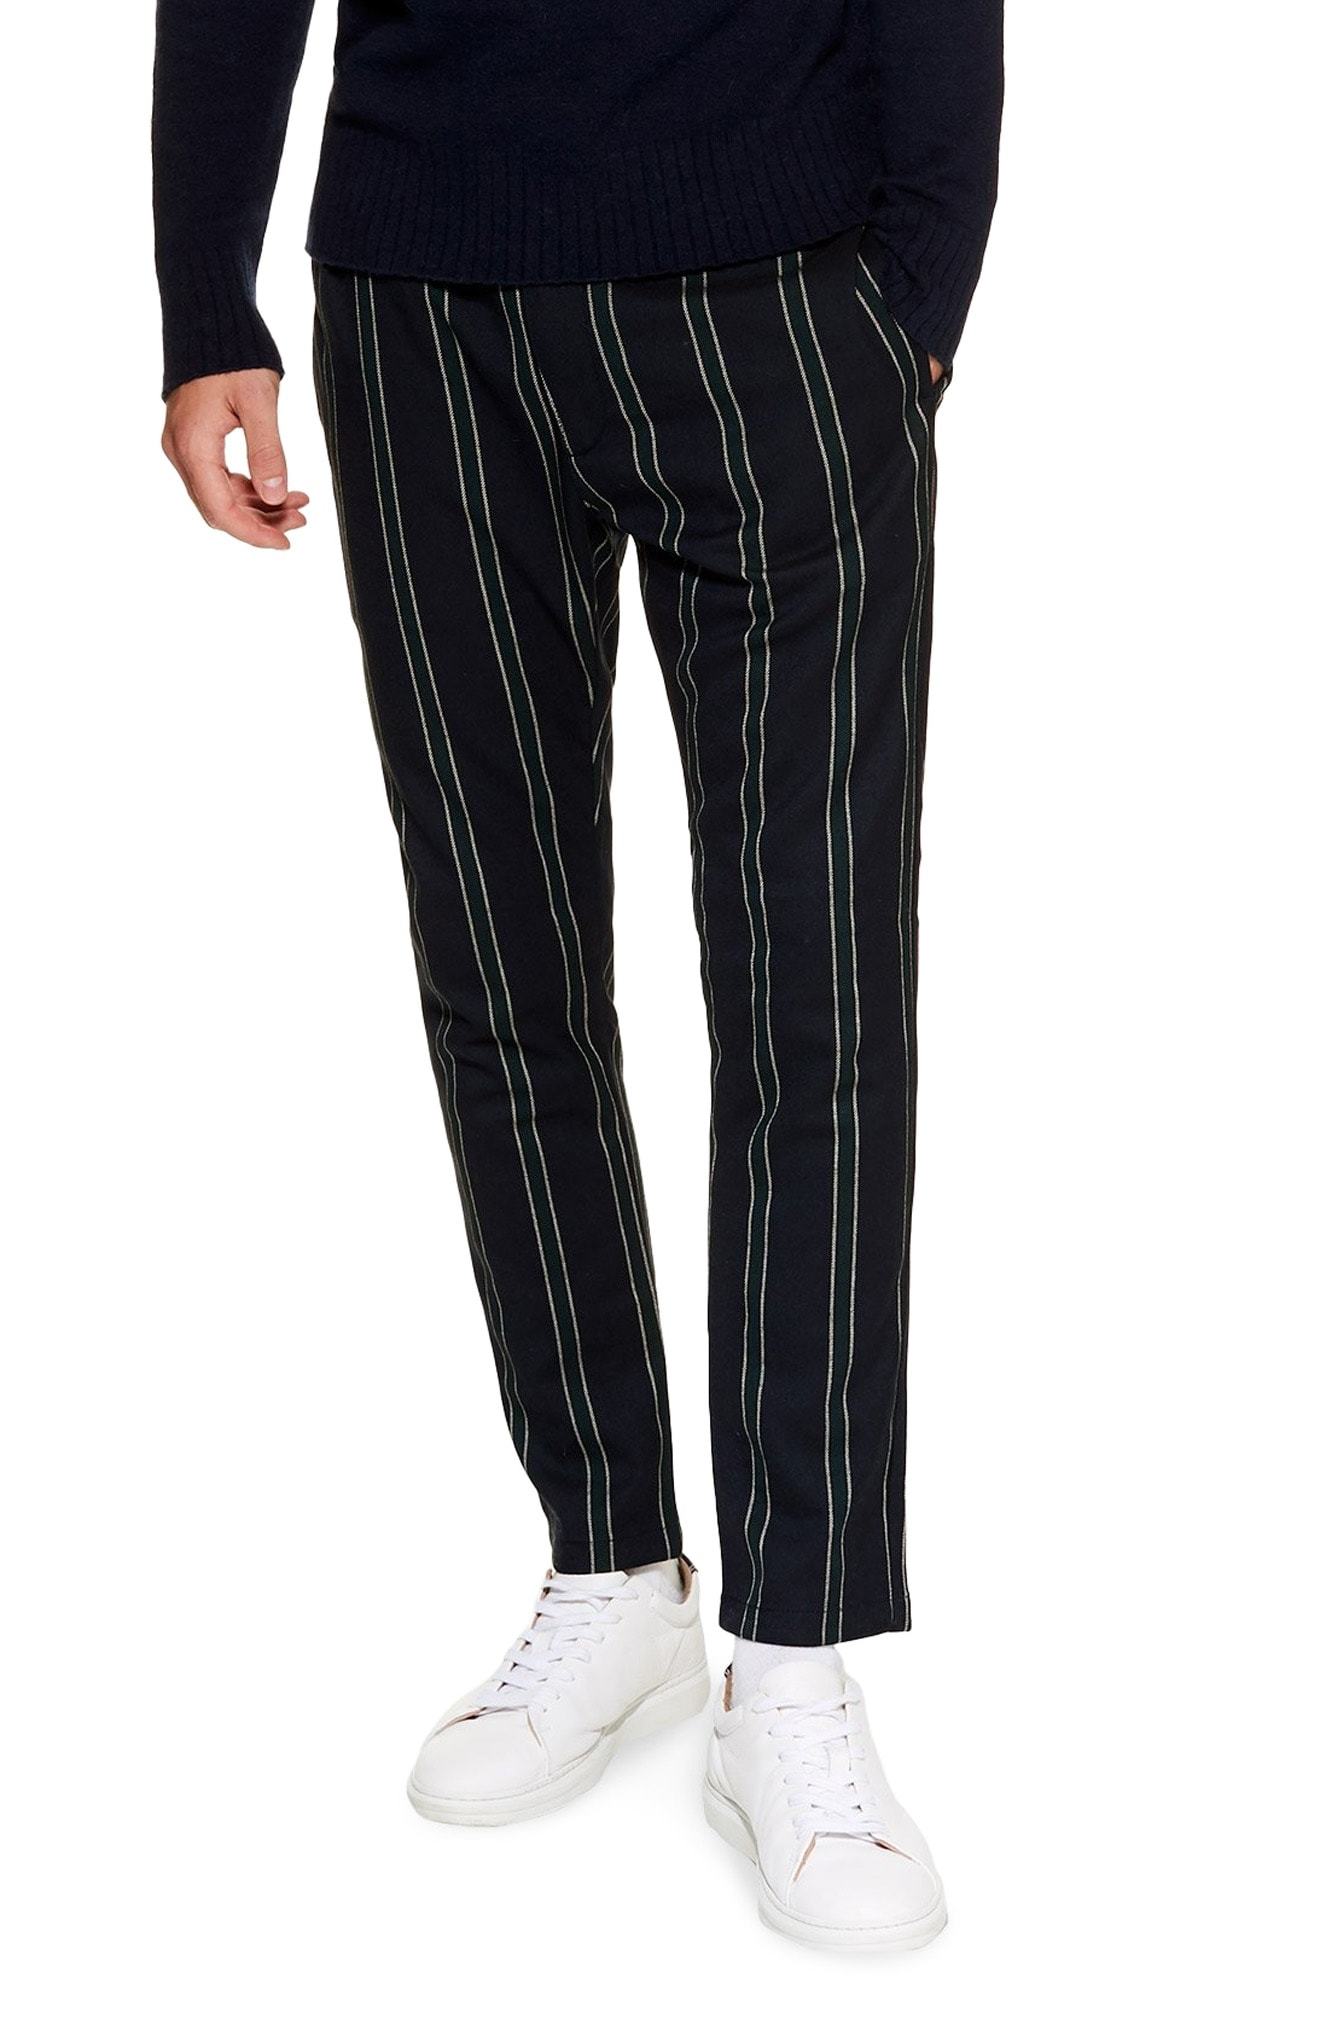 Stripes & Jogger Pants